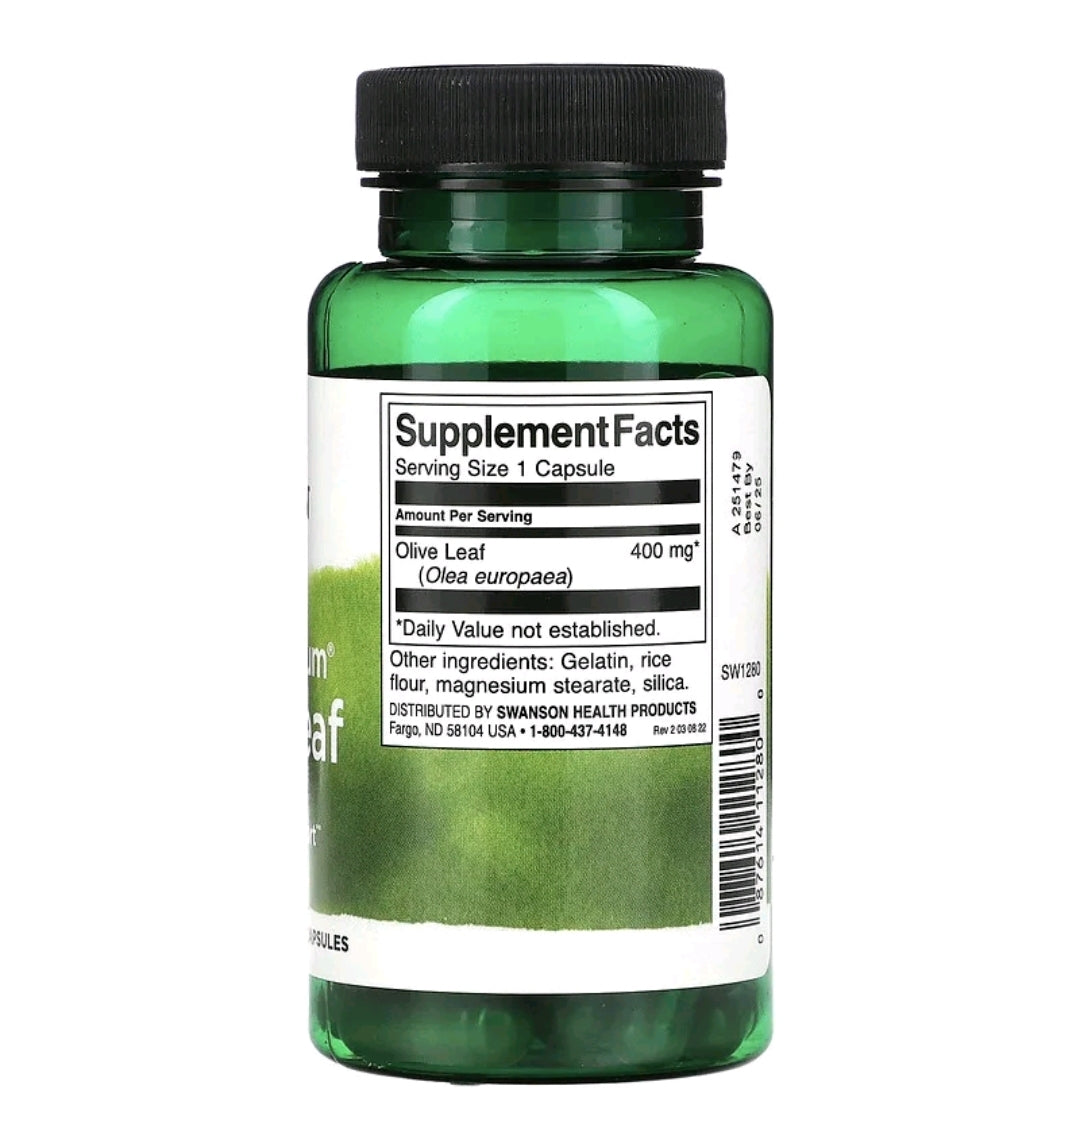 Full Spectrum Olive Leaf, 400 mg, 60 Capsules